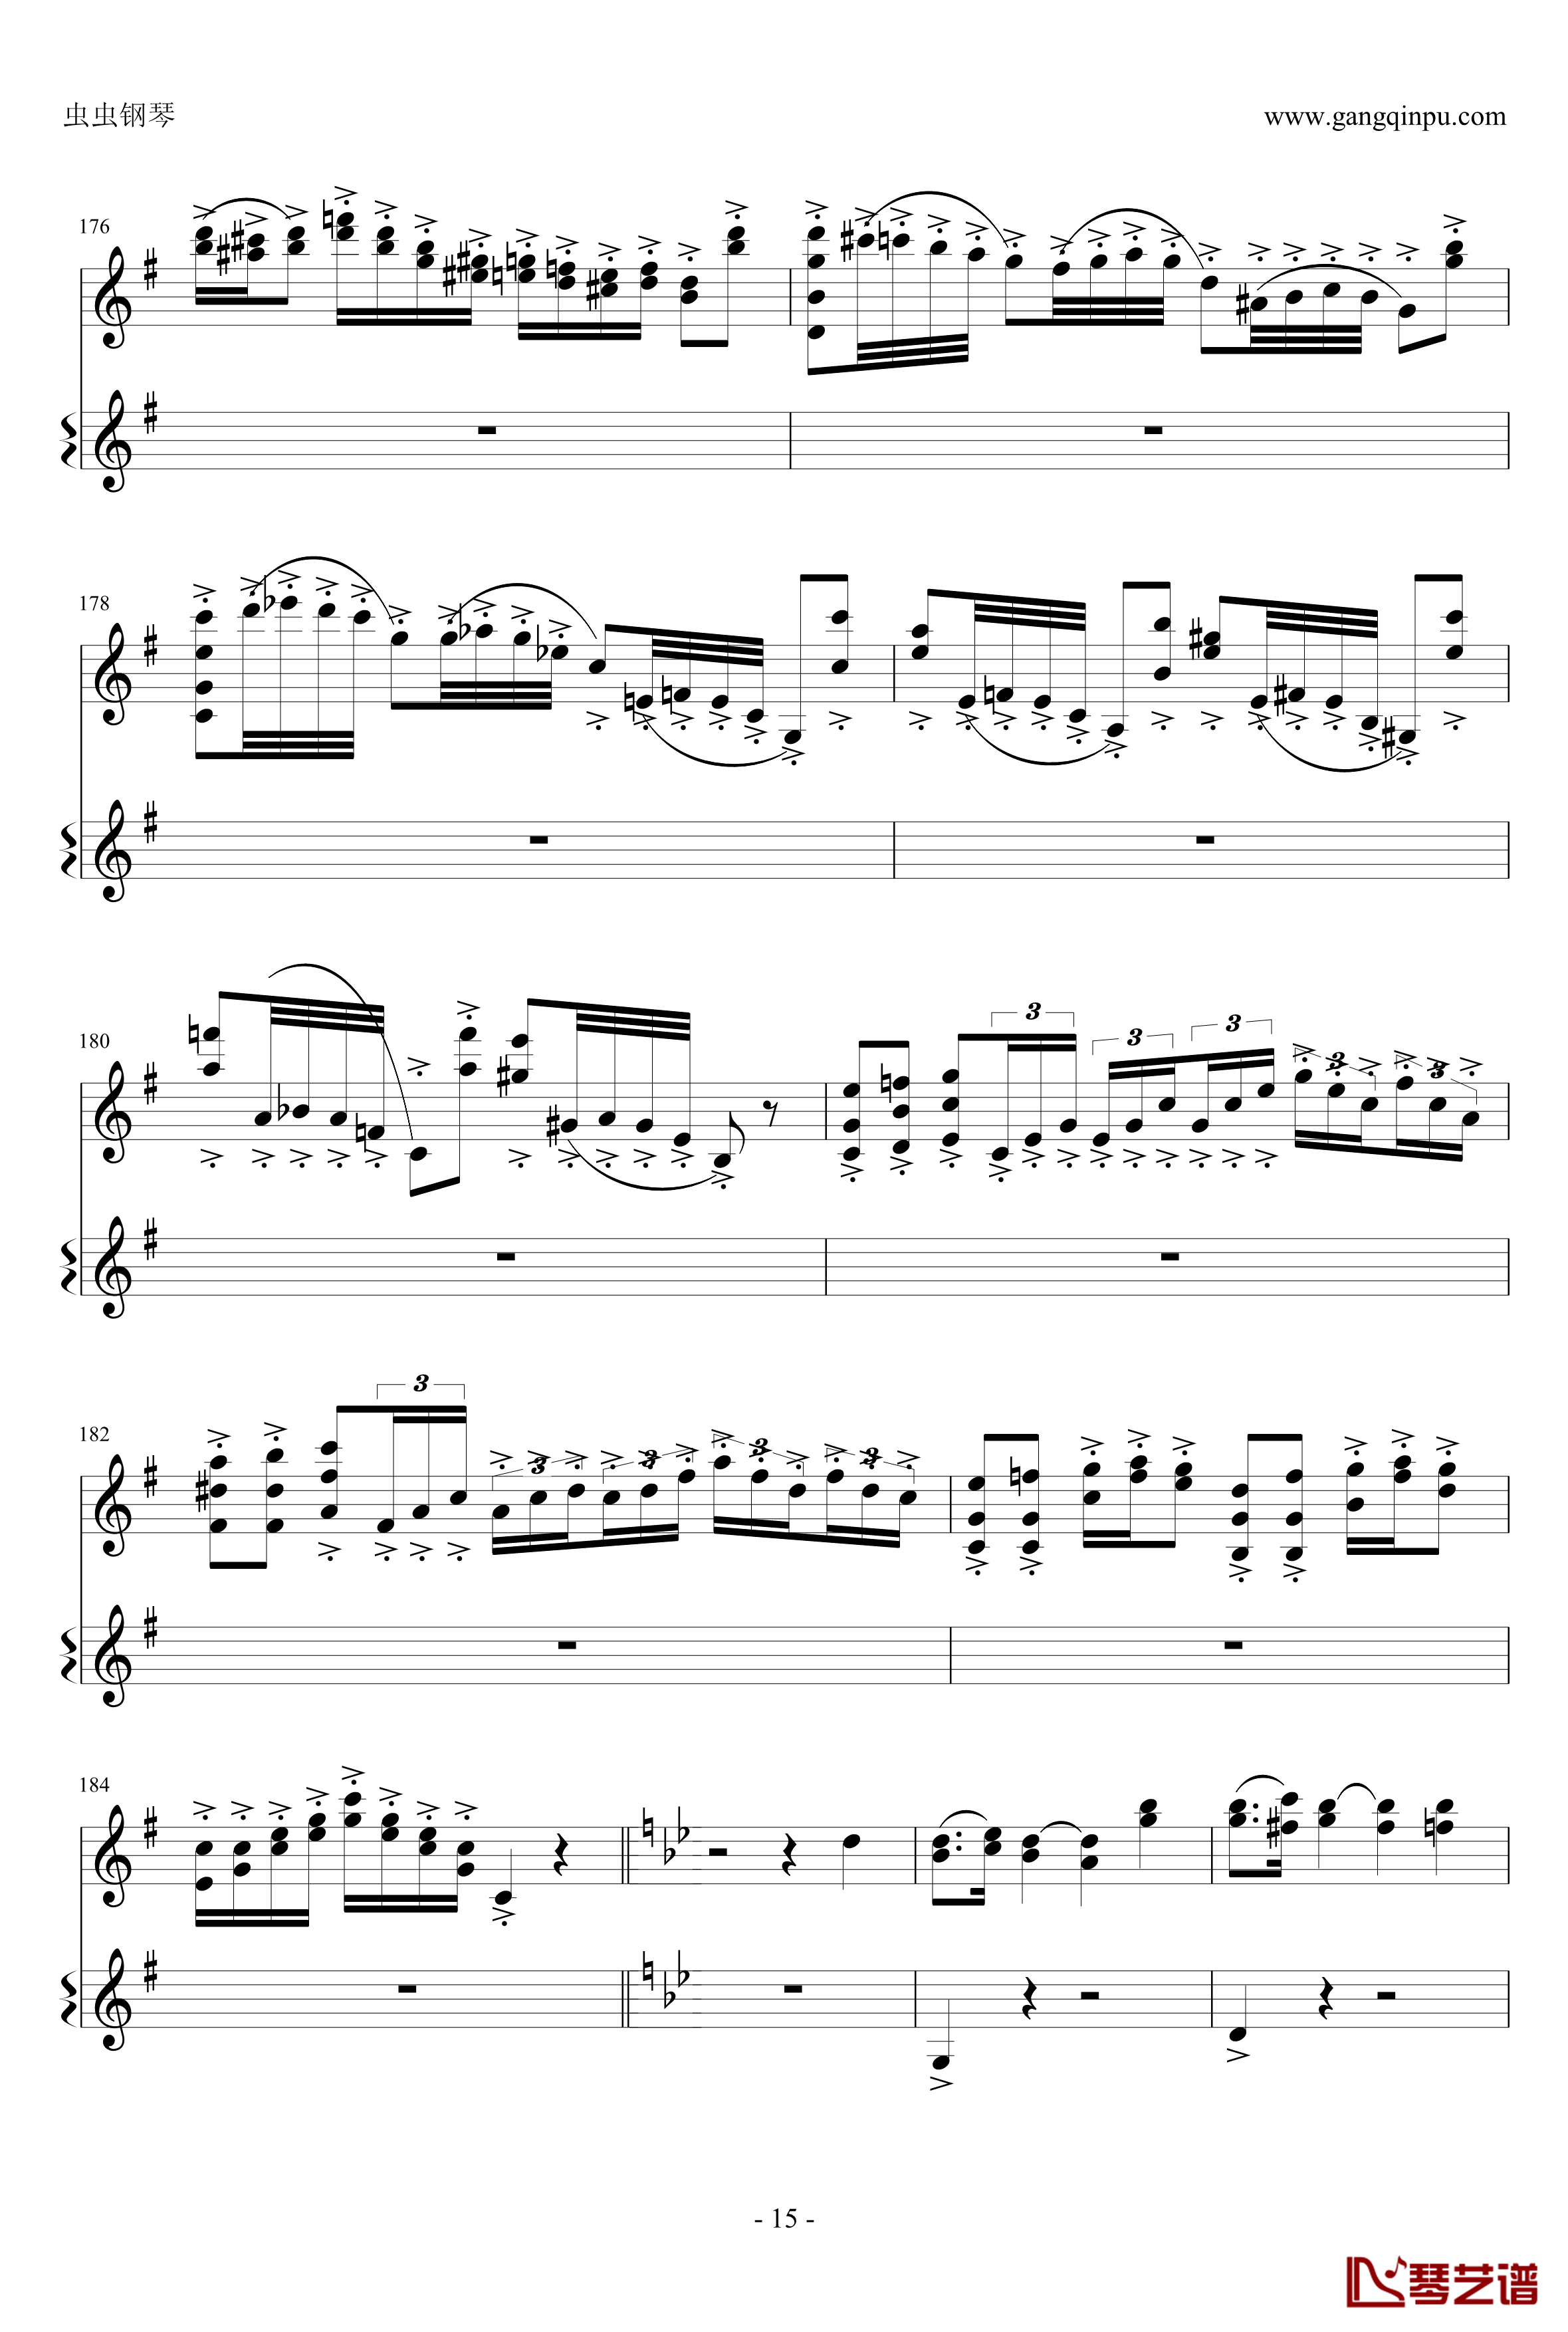 意大利国歌钢琴谱-变奏曲修改版-DXF15